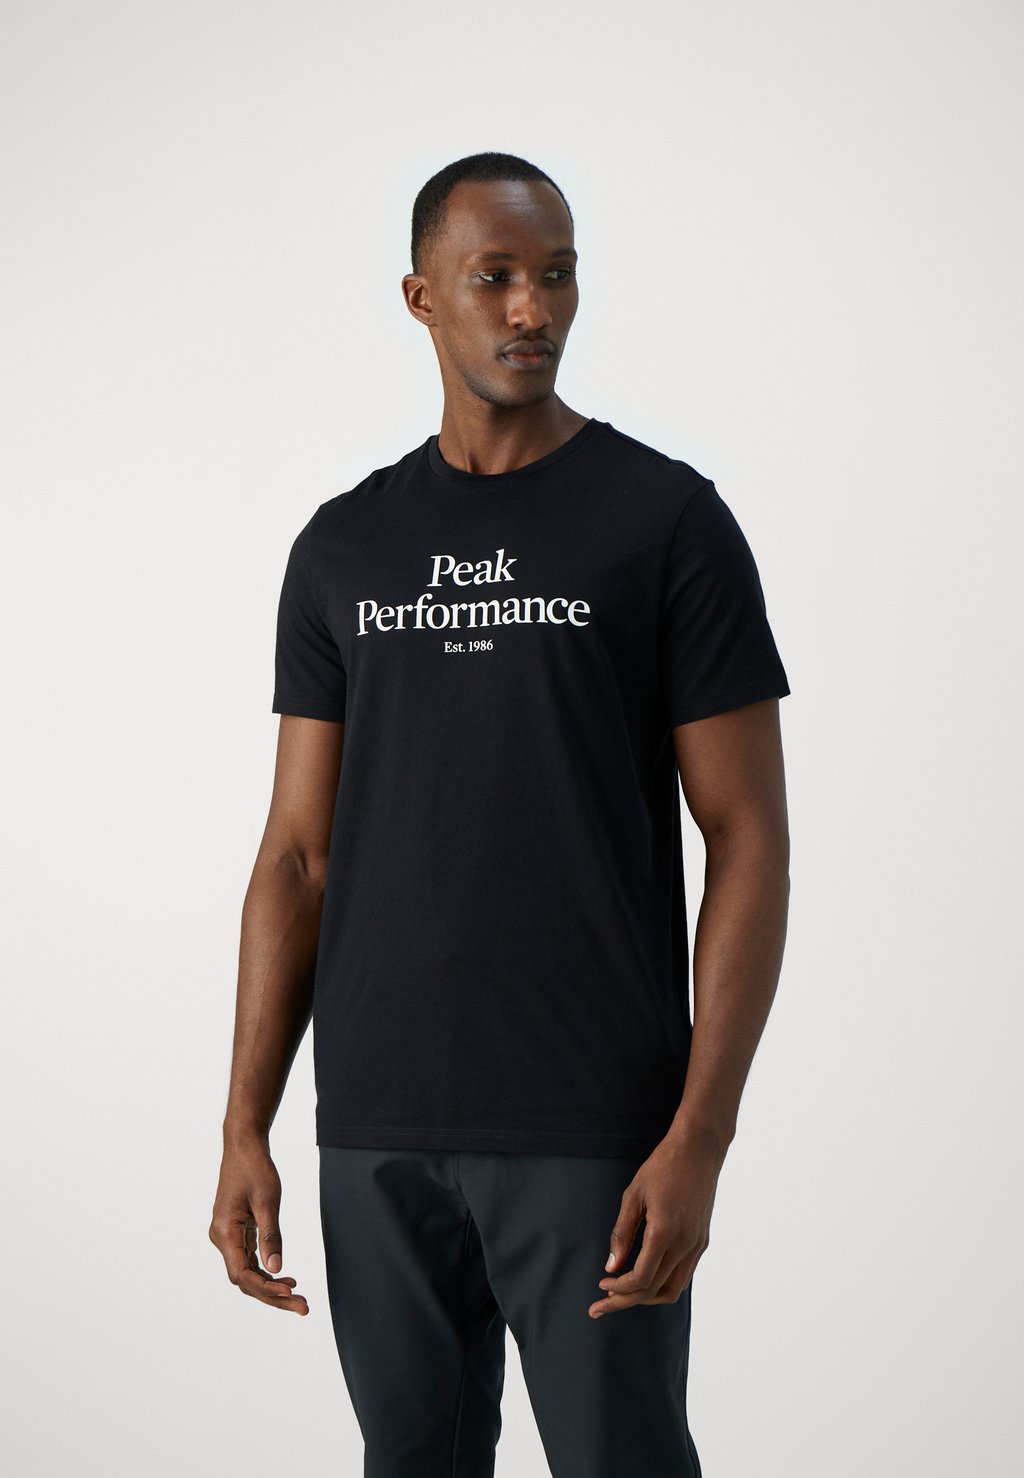 футболка с принтом original tee peak performance цвет med grey melange black Футболка с принтом Original Tee Peak Performance, цвет black/offwhite